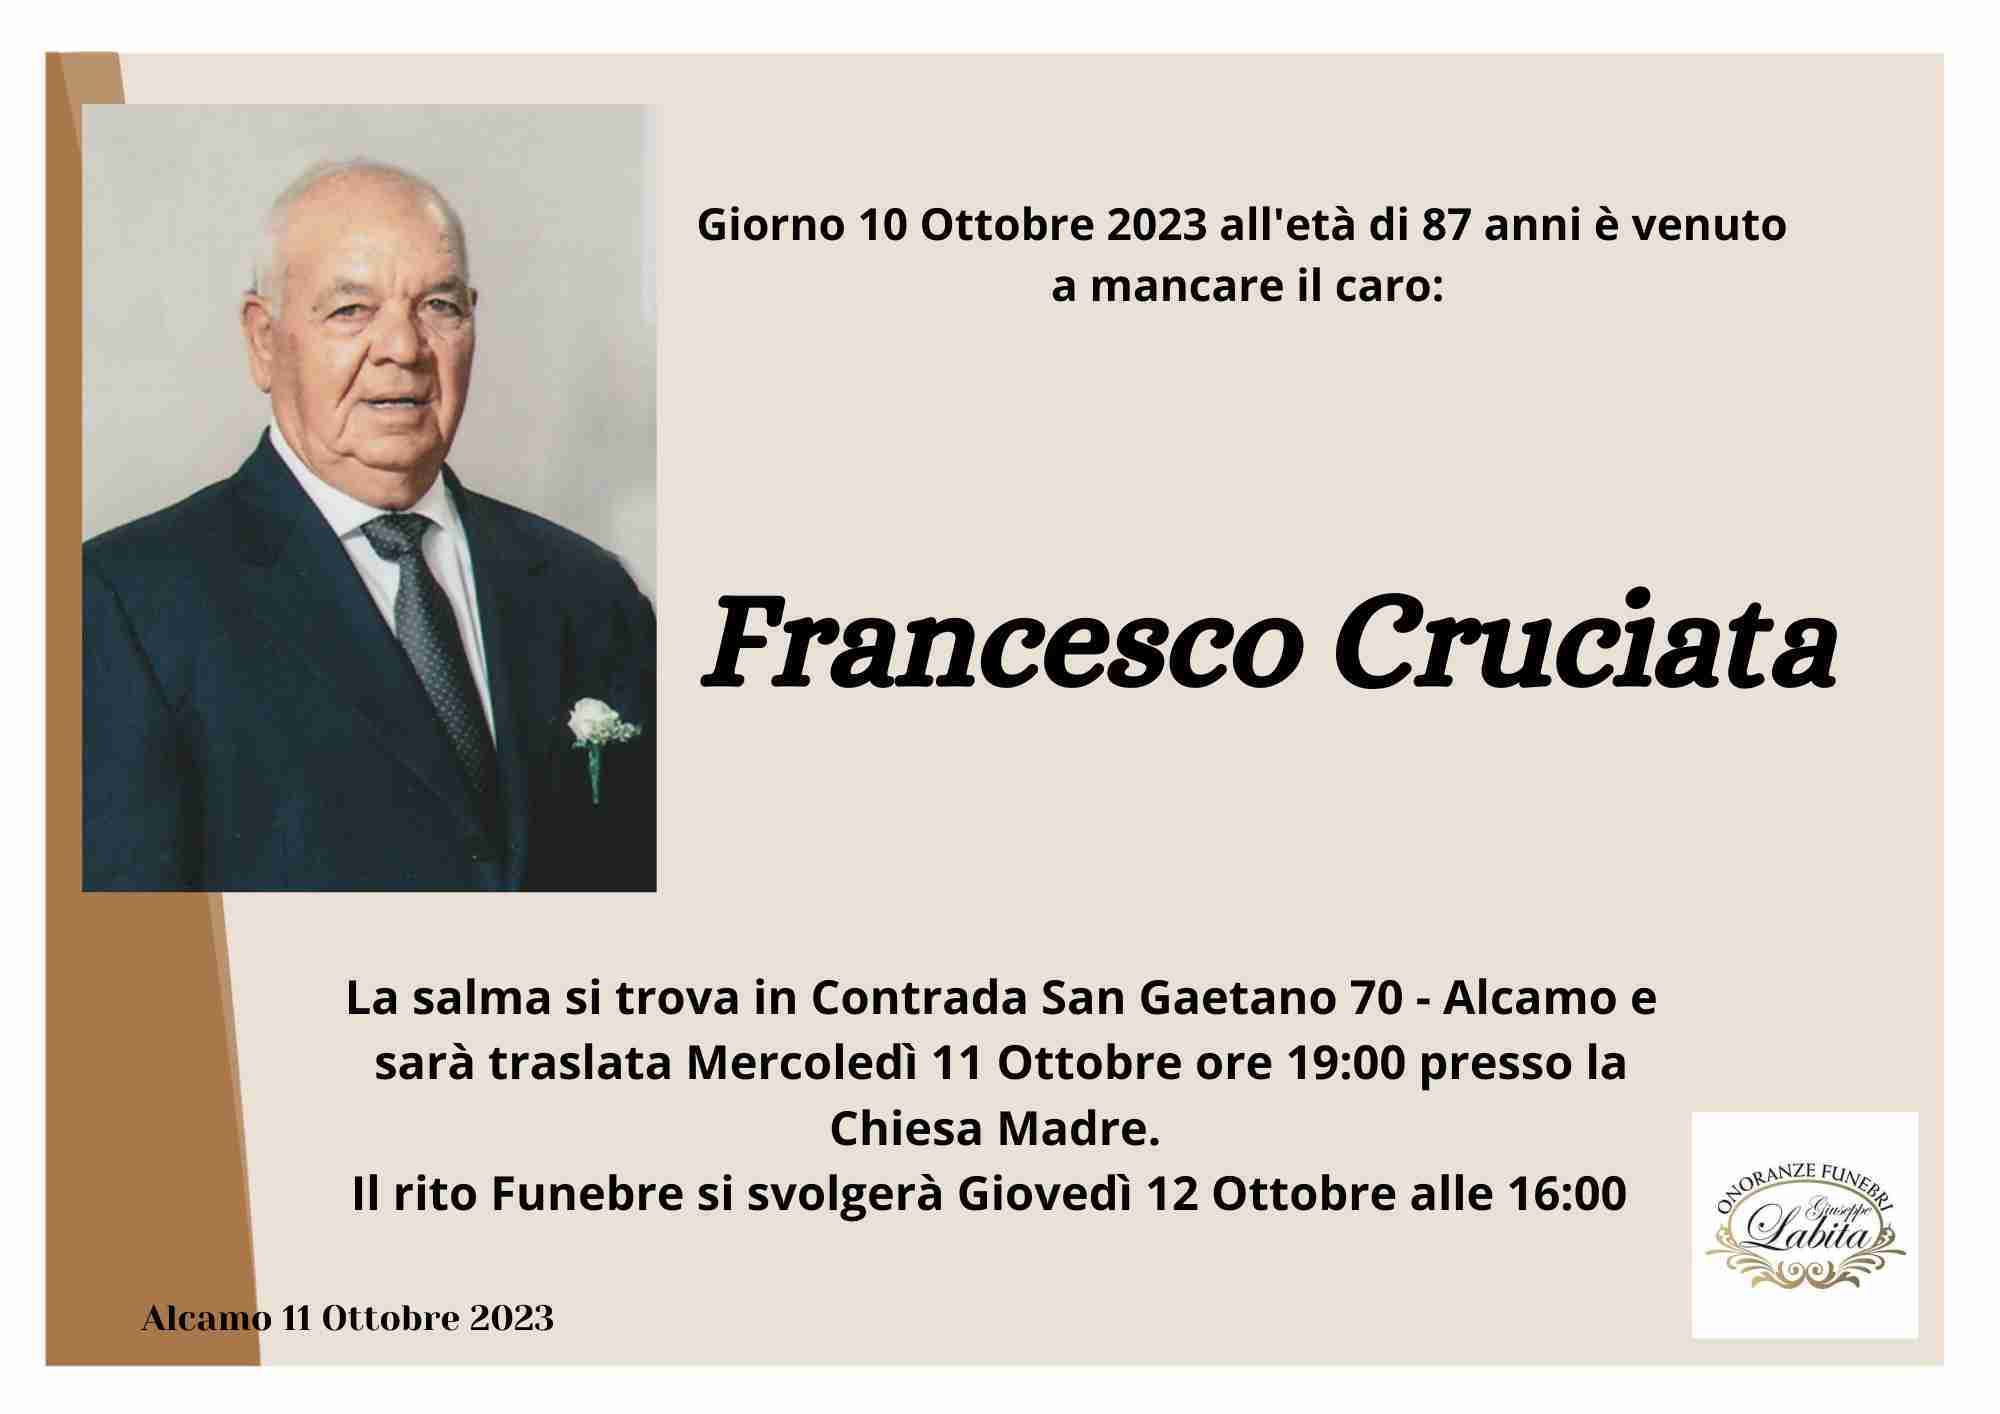 Francesco Cruciata